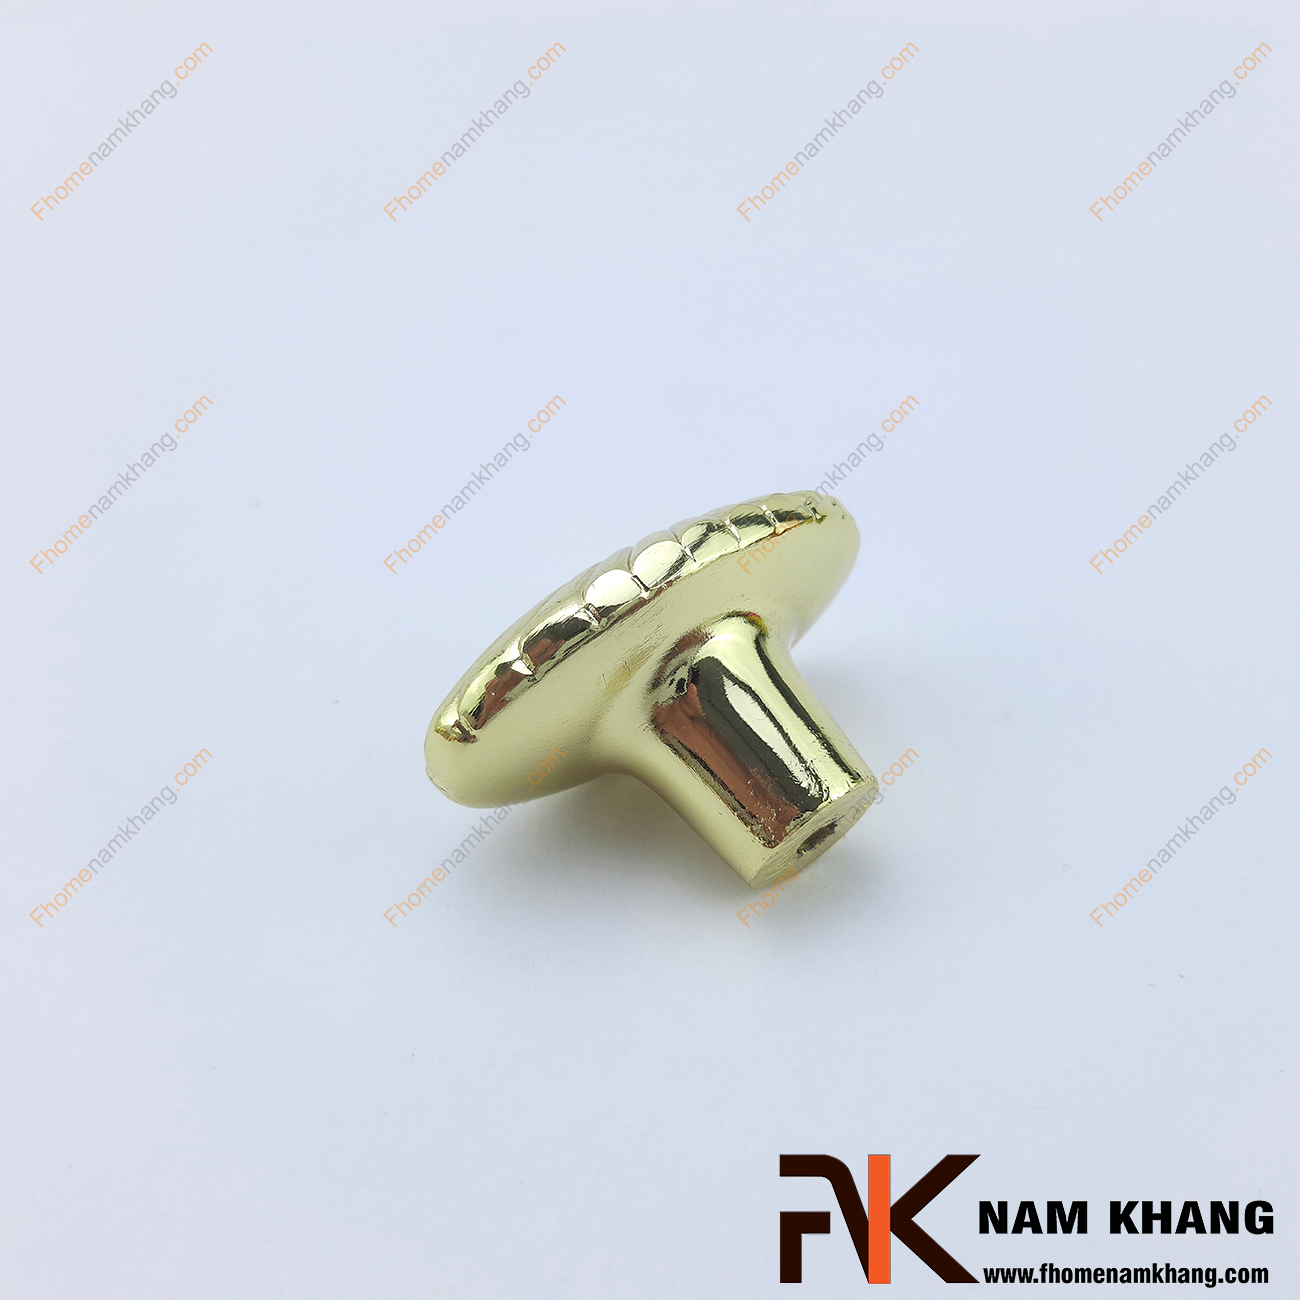 Núm tủ cổ điển mạ vàng NK029-V được thiết kế họa tiết theo phong cách đối xứng bồi đắp tạo nên một nét nhìn dễ chịu và dễ dàng phối hợp trên nhiều loại tủ kệ, ngăn kéo.